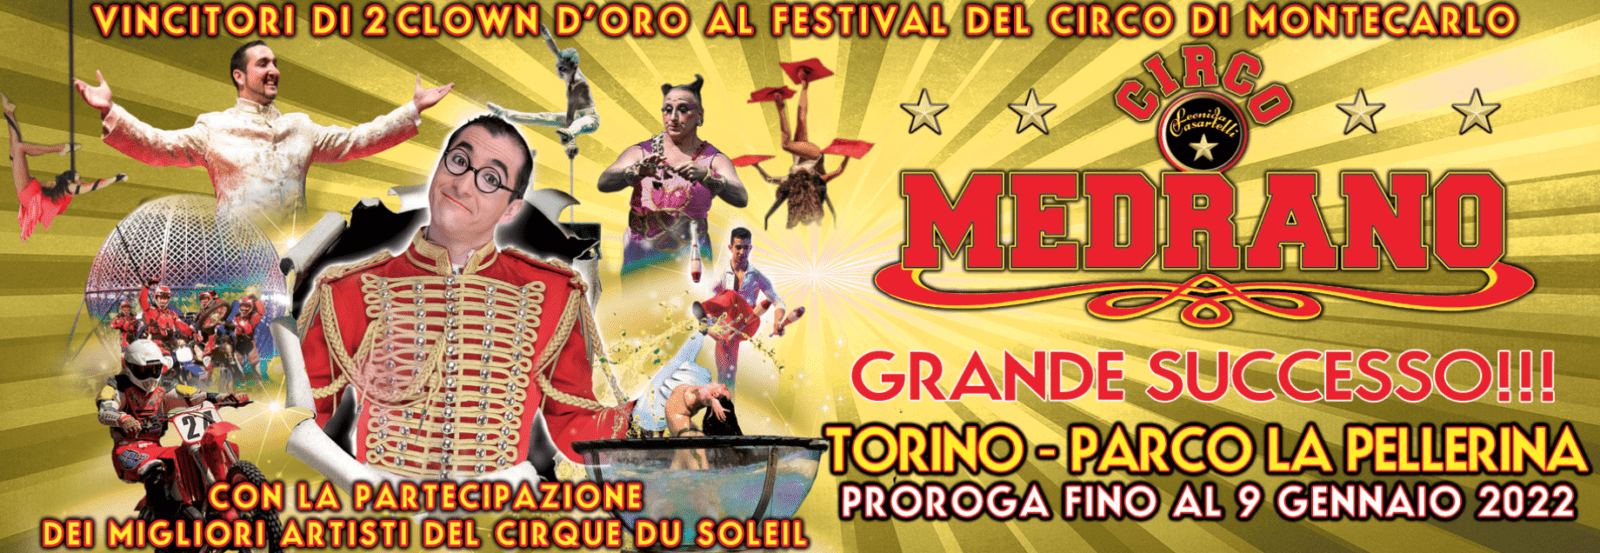 Circo Medrano alla Pellerina a Torino